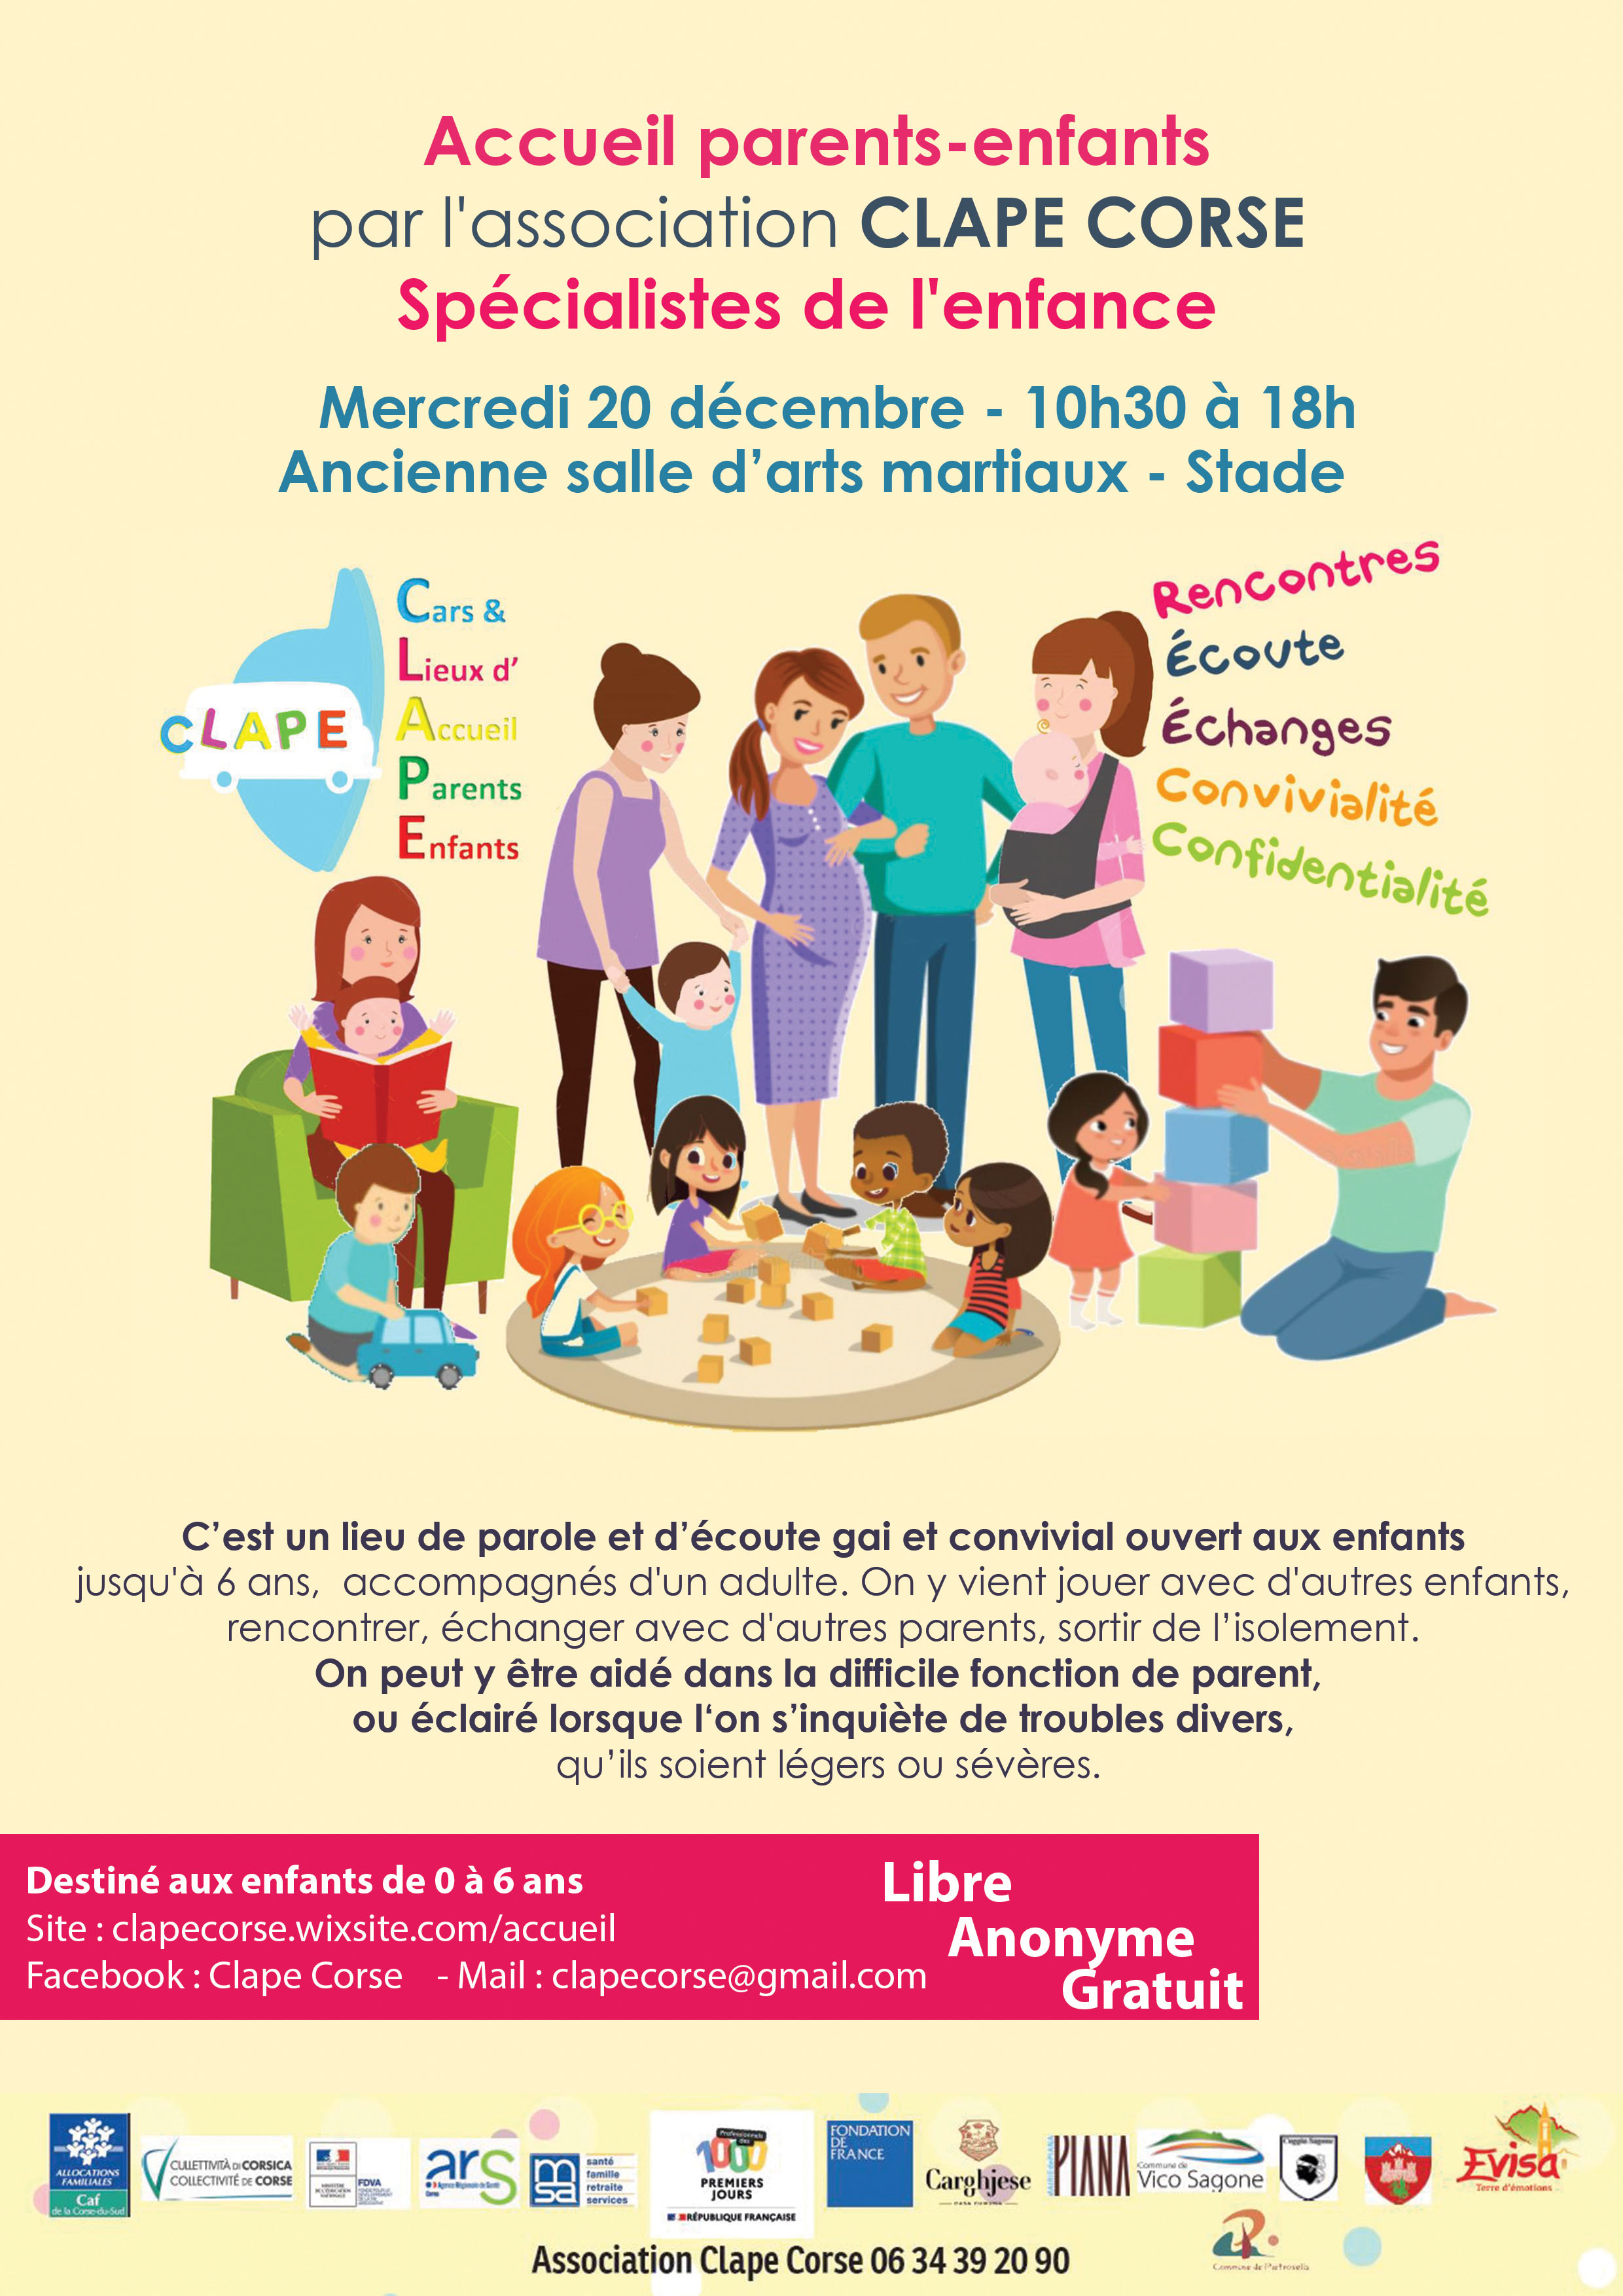 CLAPE CORSE - Accueil parents/enfants - Mercredi 20 décembre